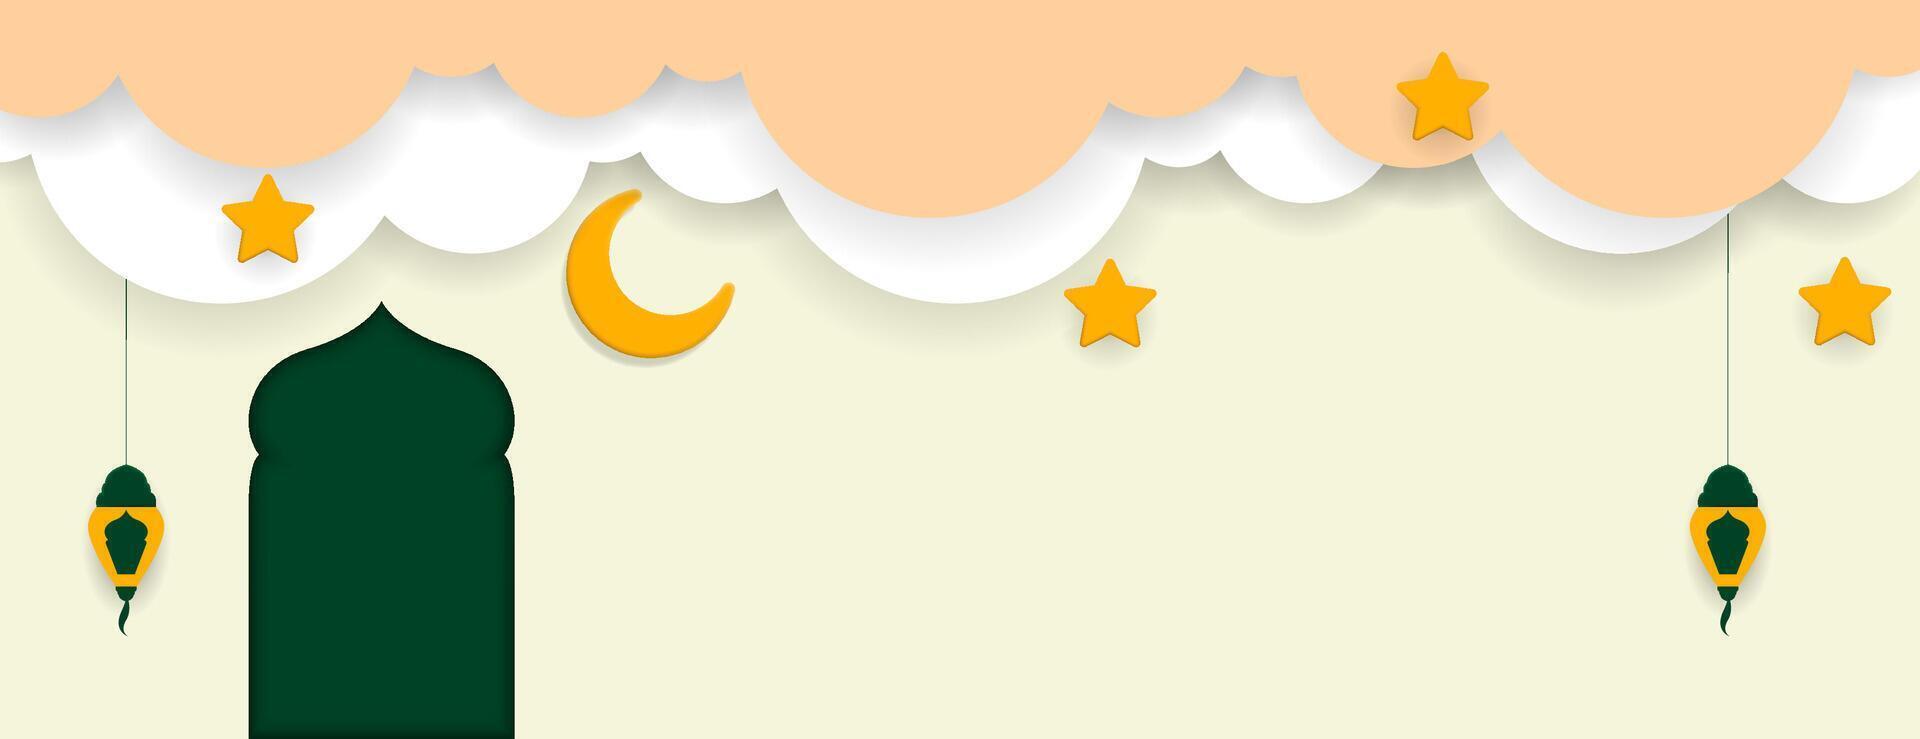 islámico antecedentes con creciente, estrellas, linterna y nube. vector ilustración